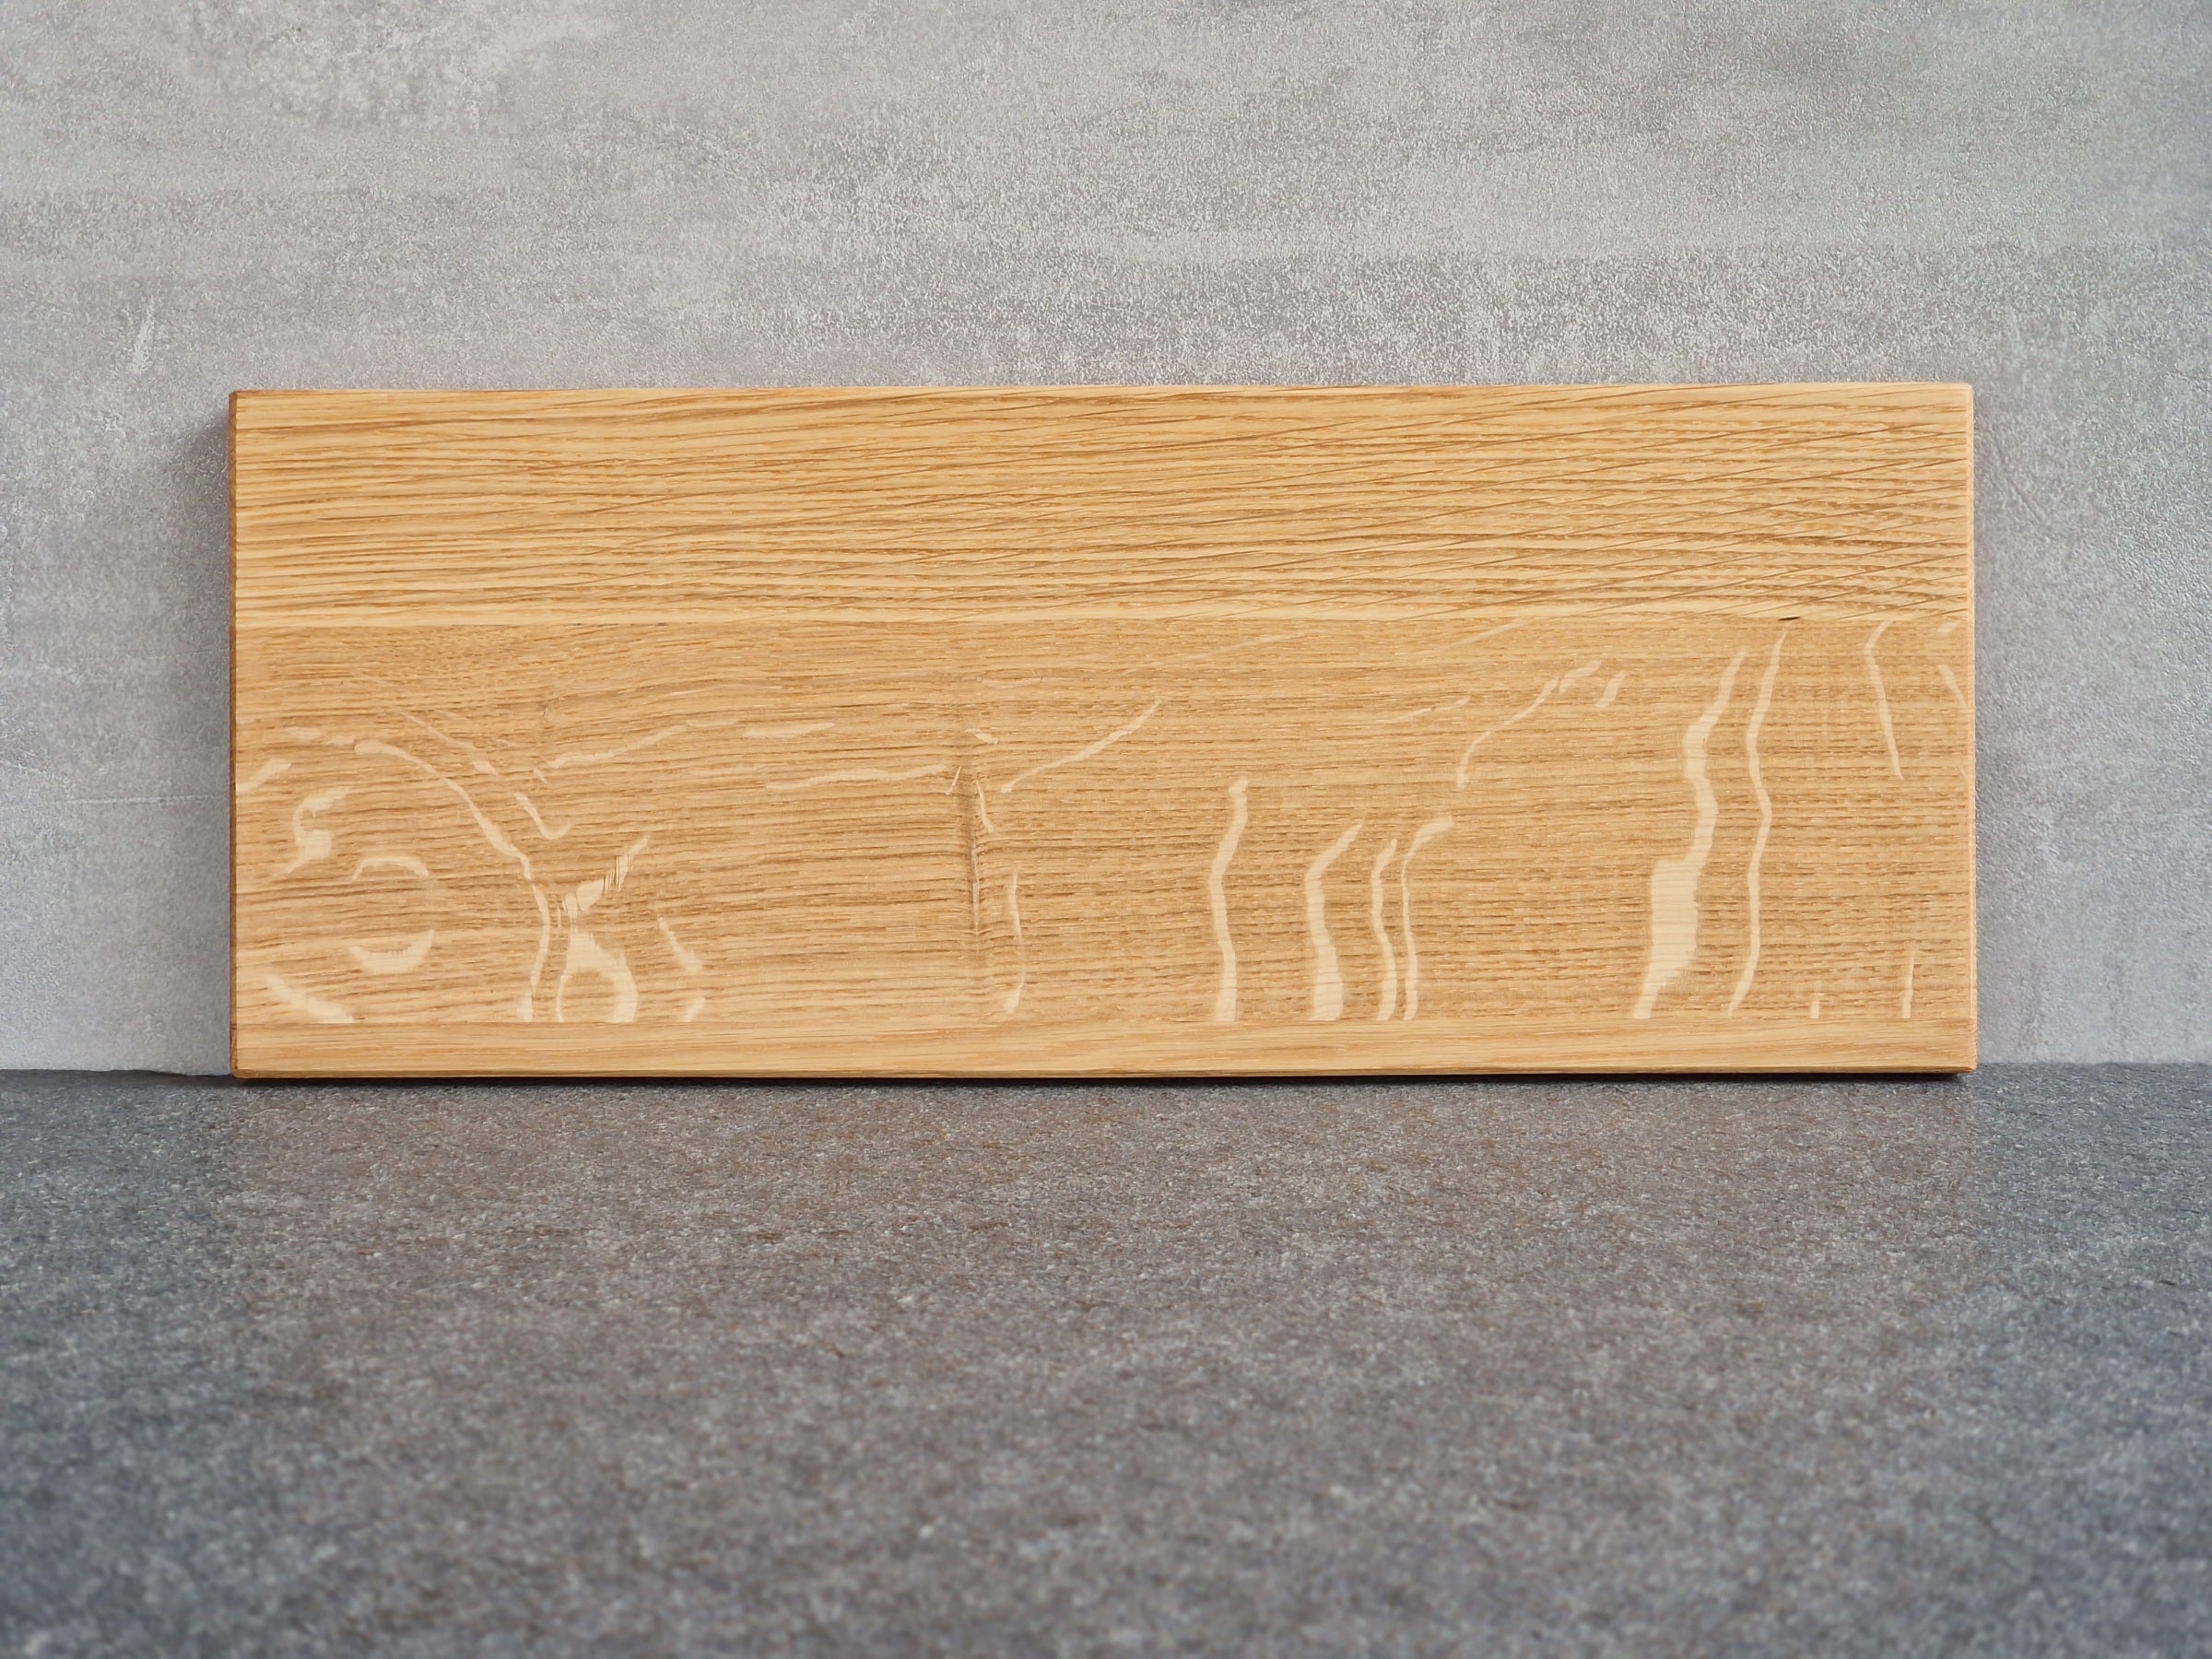 Rückseite Eiche Holz Tablett mit einer Vertiefung für eine große Tasse an einer Betonwand angelehnt. 